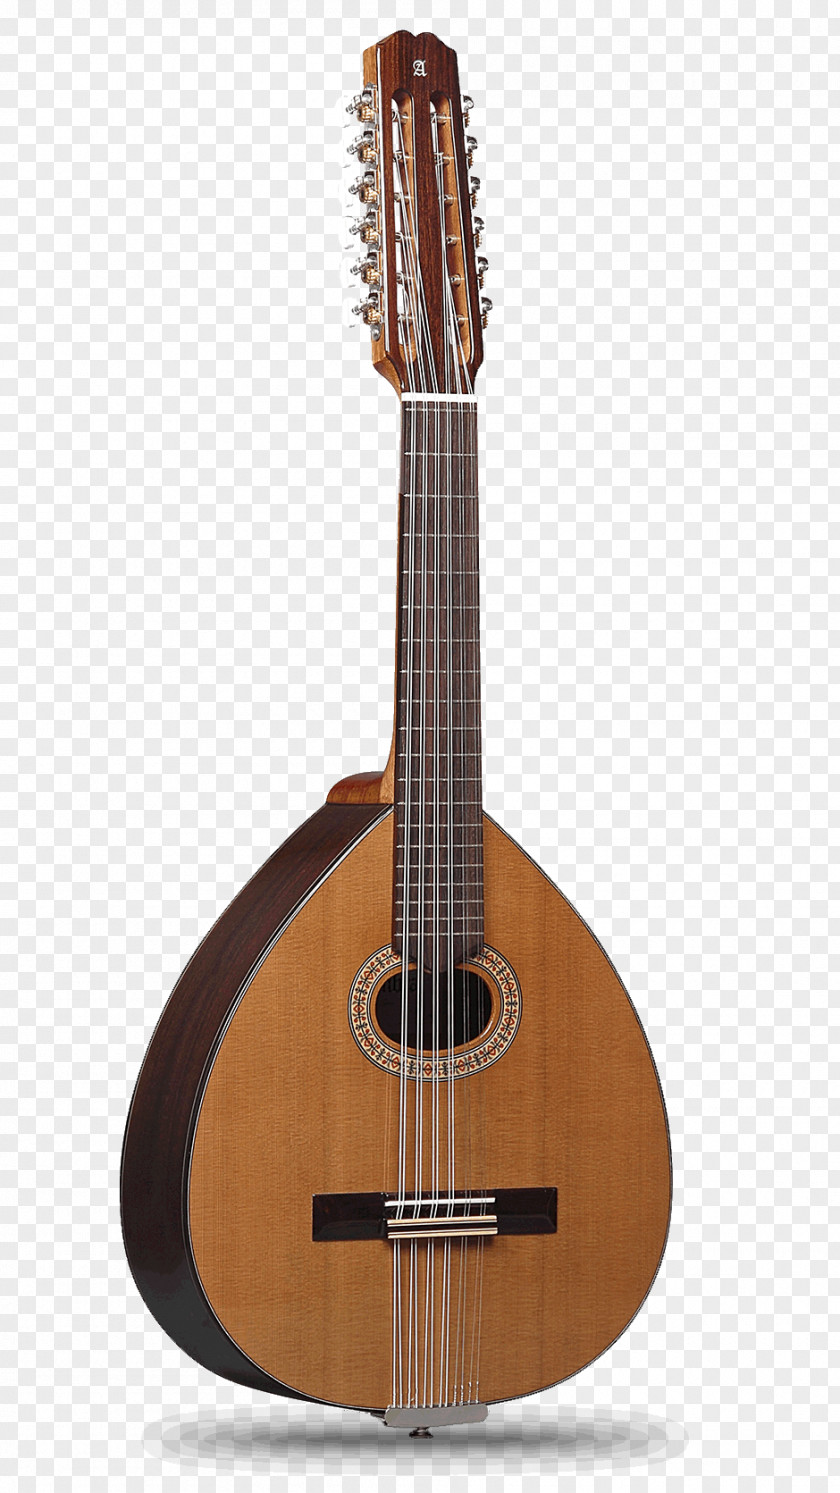 3c Digital Alhambra Lute Classical Guitar Bandurria PNG